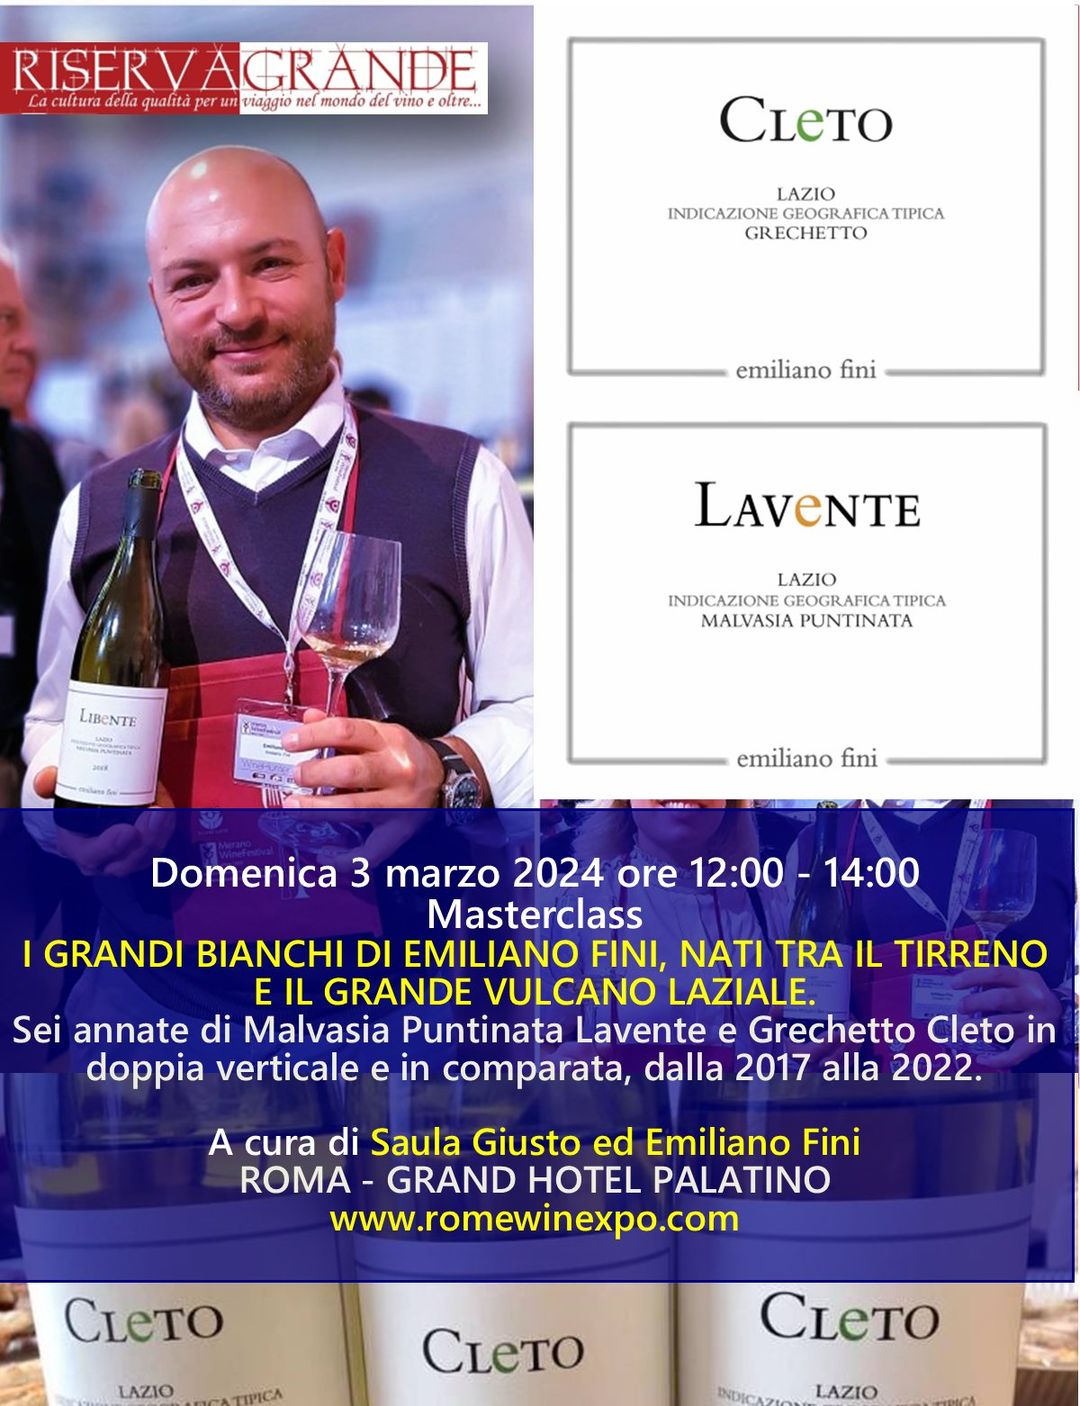 Rome Wine Expo edizione 2024, assaggi, calici ed emozioni, locandina evento